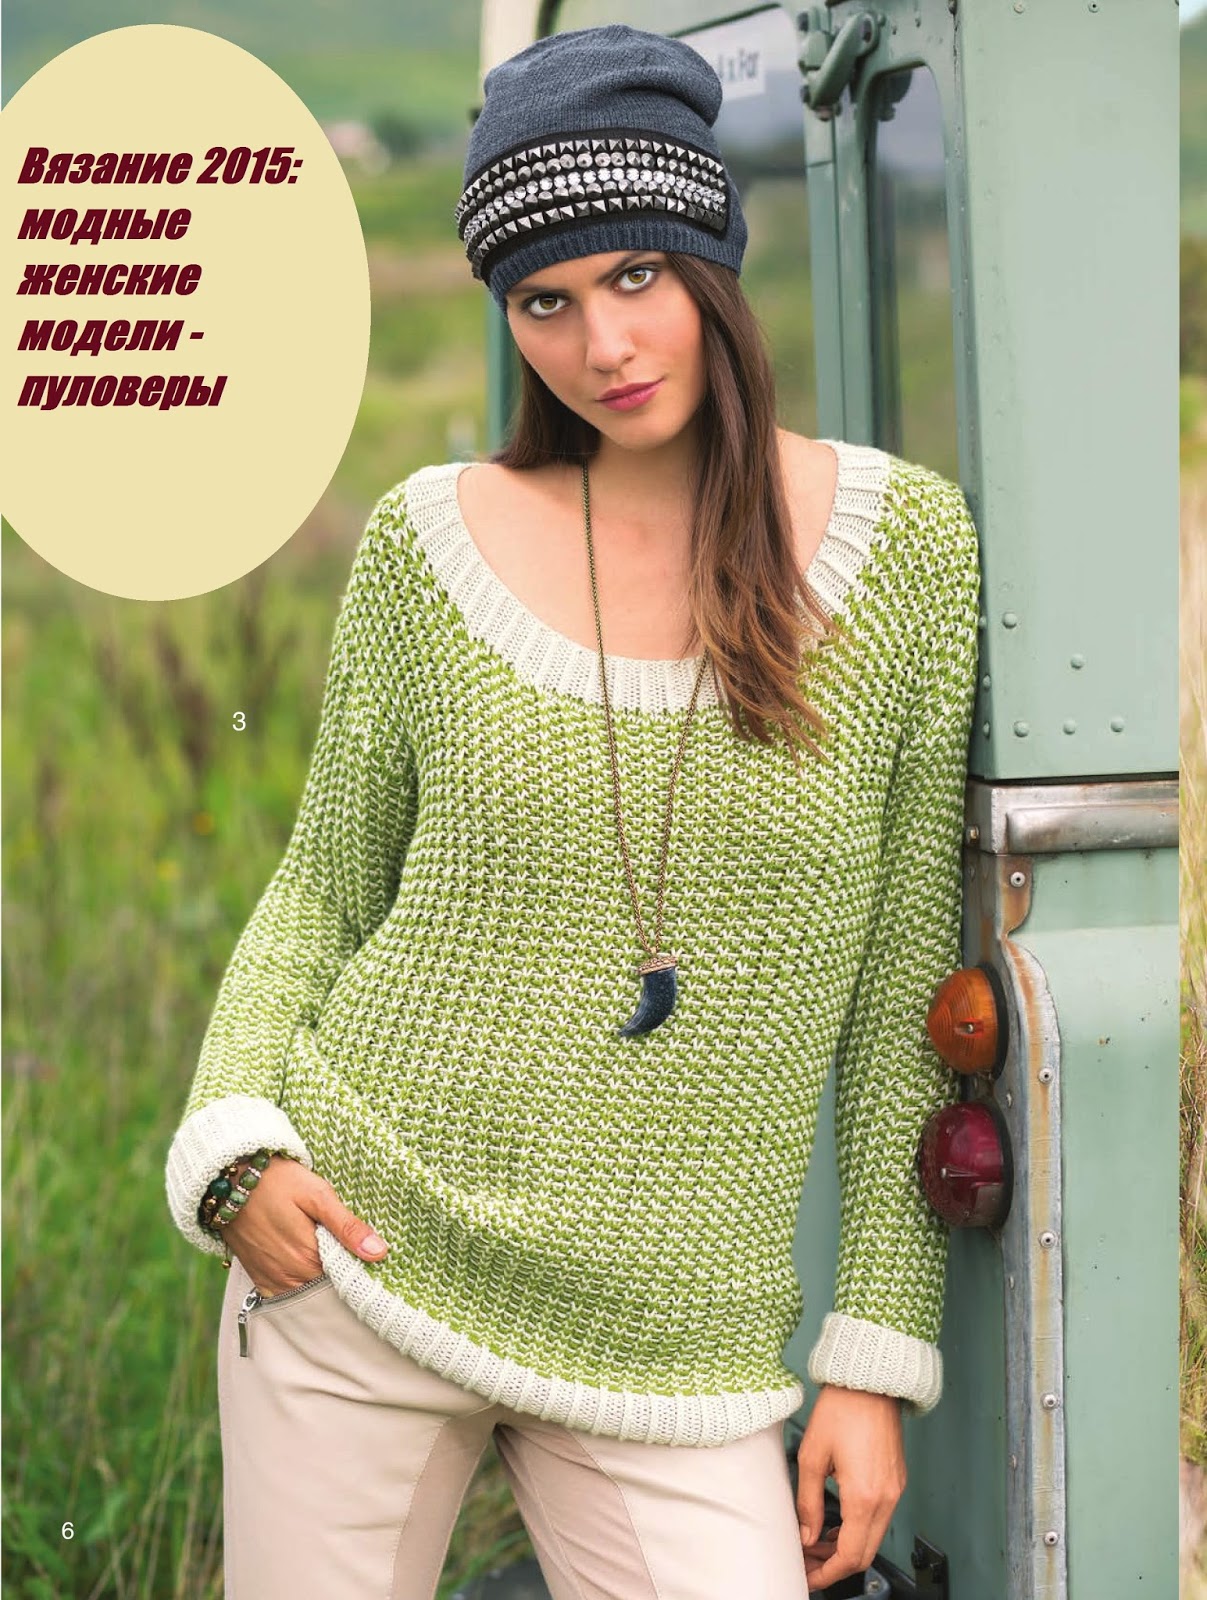 Вязание: женские модели 2015: пуловер и жакет